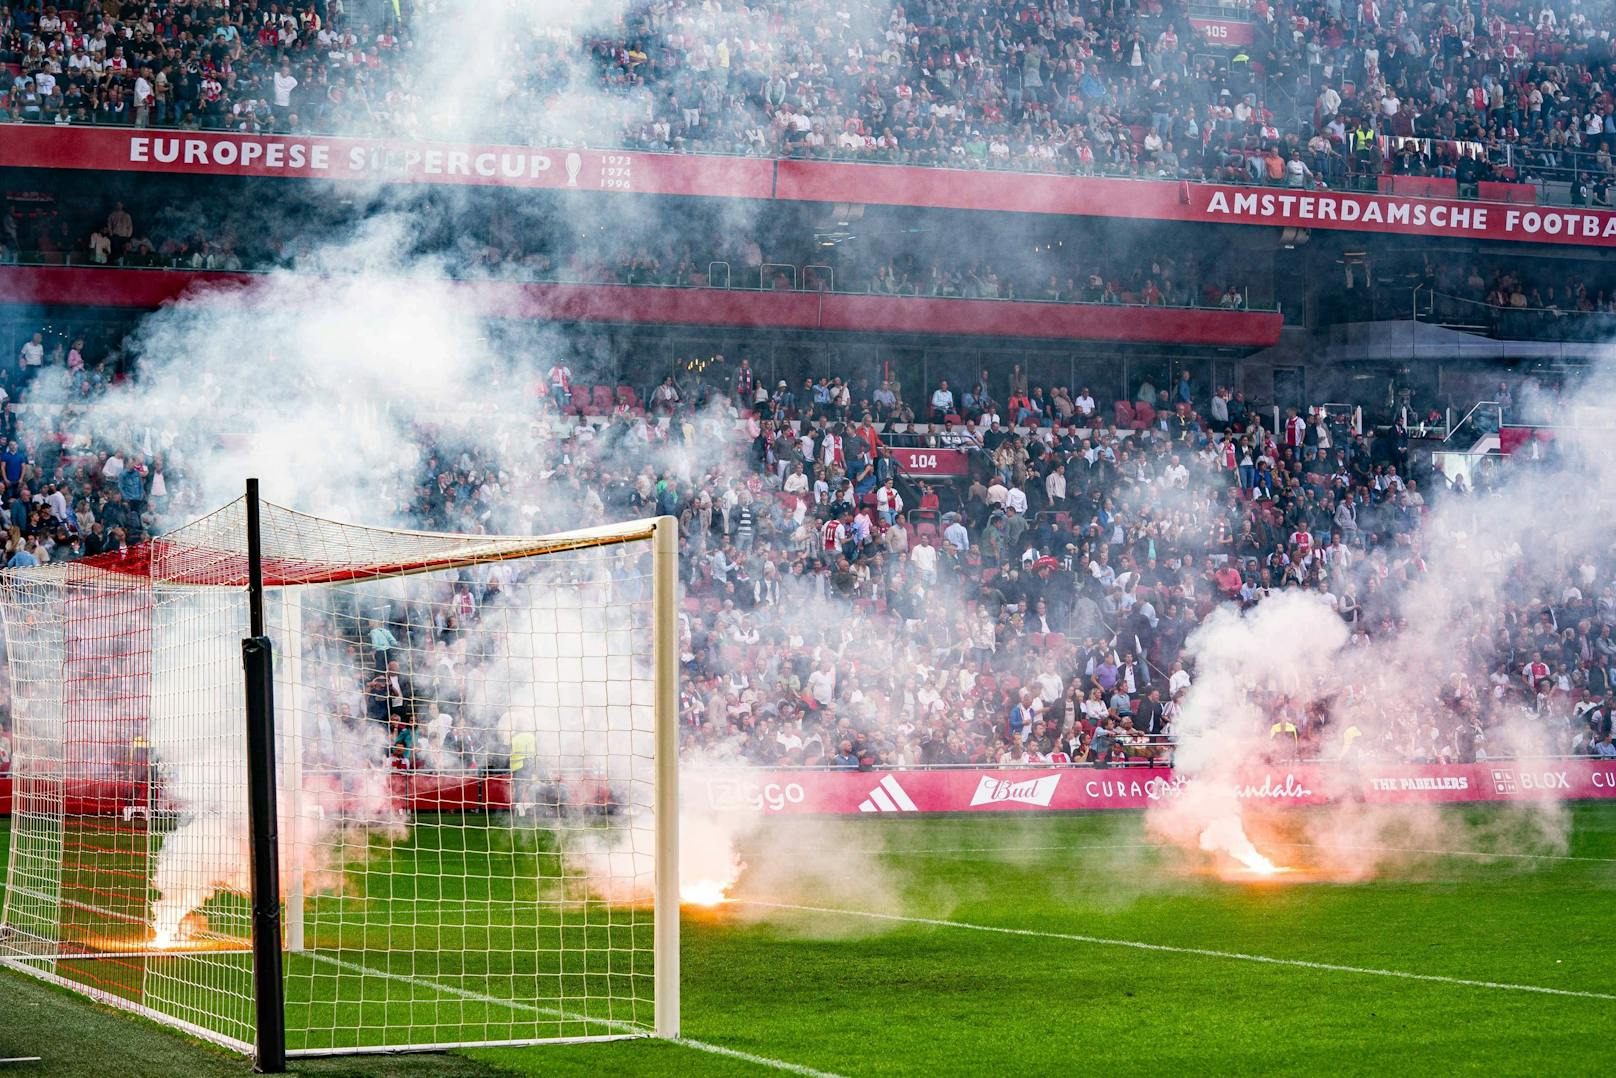 Das Spiel zwischen Ajax und Feyenoord wurde abgebrochen